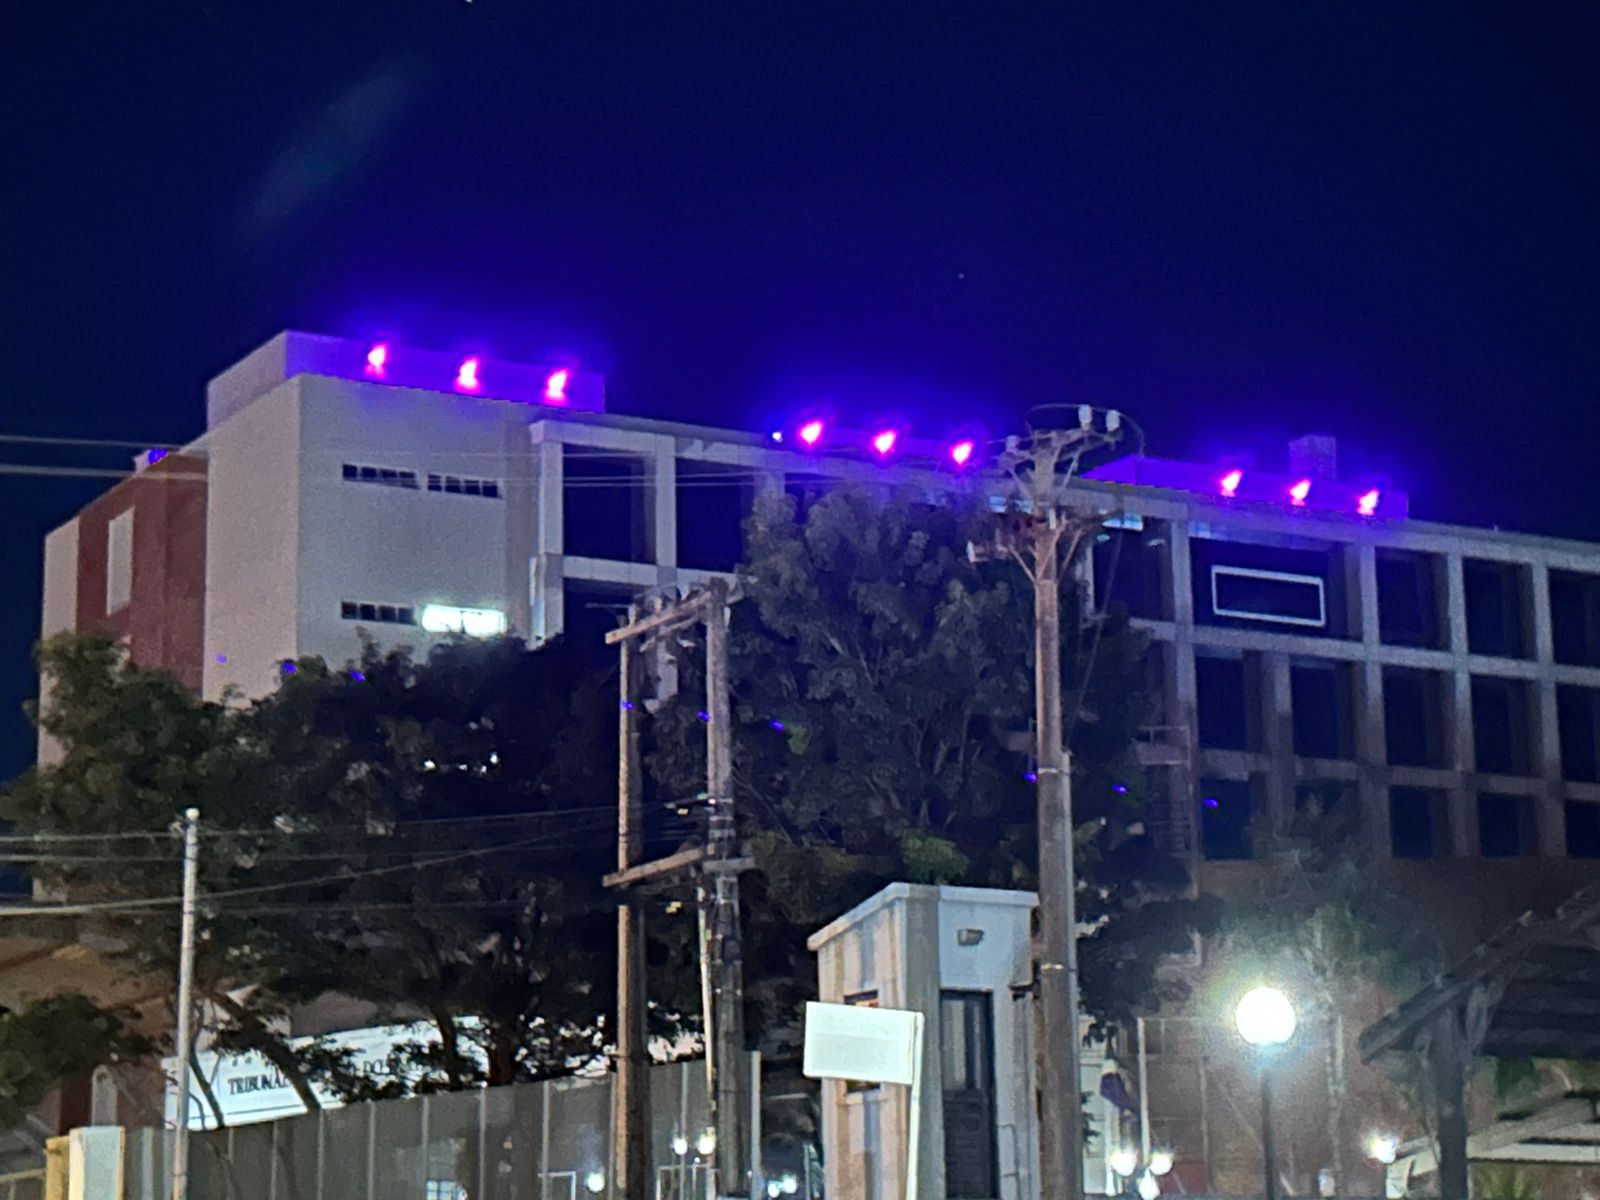 a Imagem mostra a fachada do prédio sede do TRT24 no período da noite. No terraço do prédio, lâmpadas iluminam a fachada com a cor roxa.